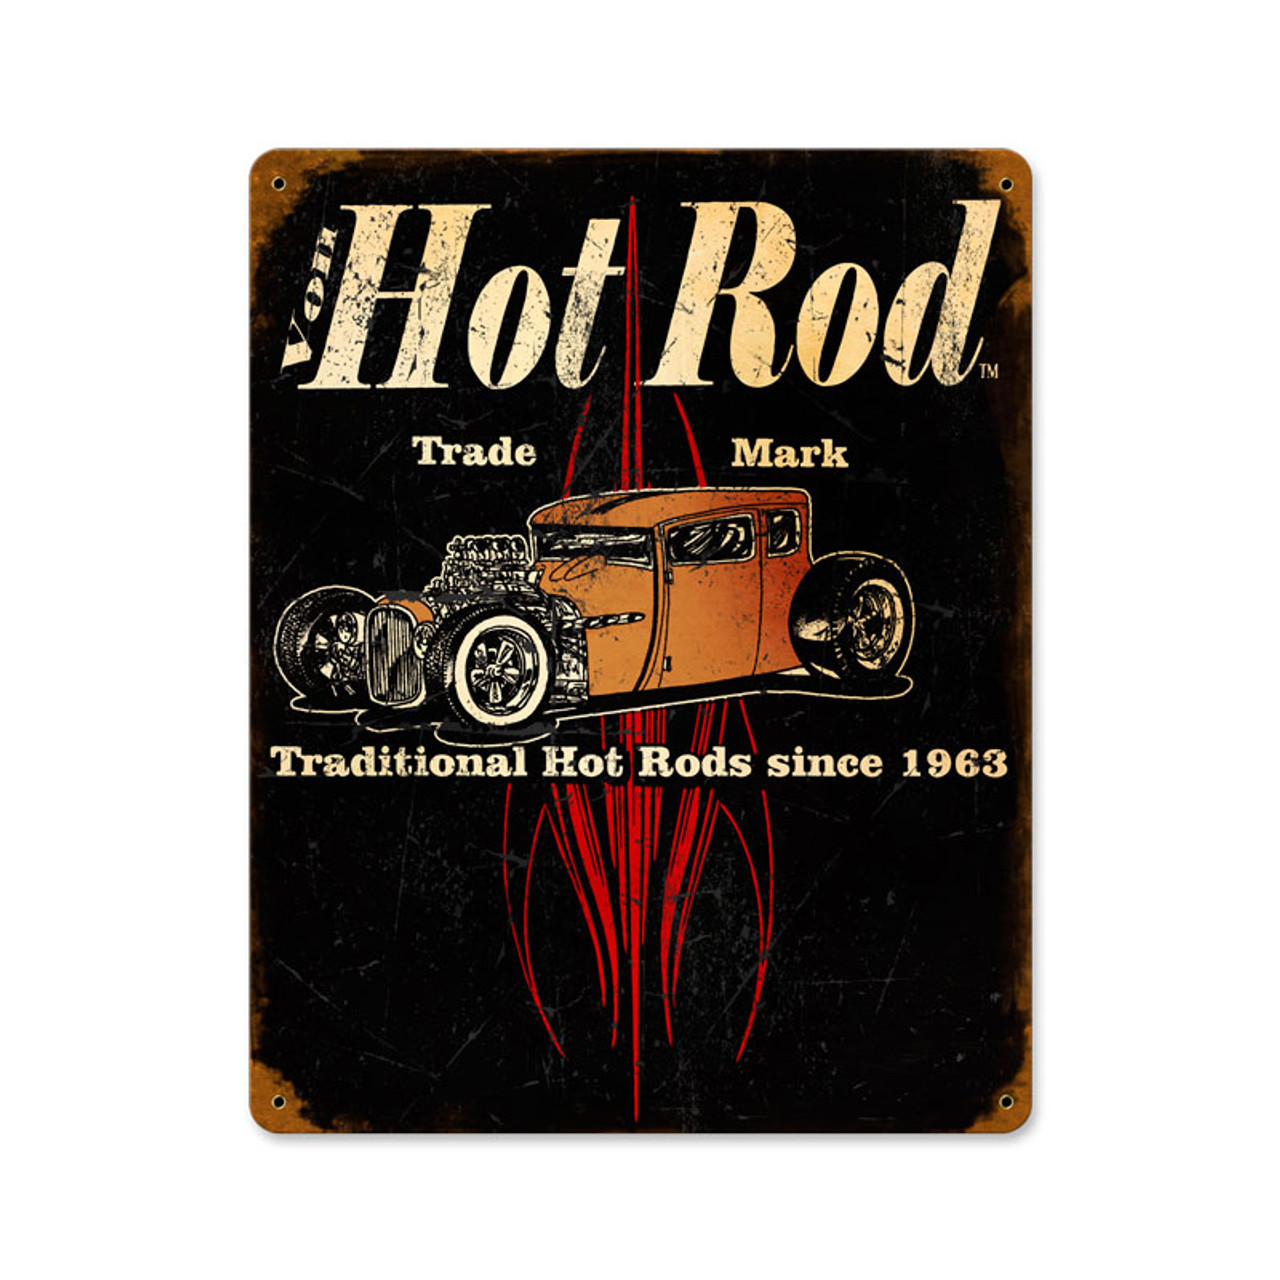 Von Hot Rod Trademark Vintage Metal Sign 12 x 15 Inches